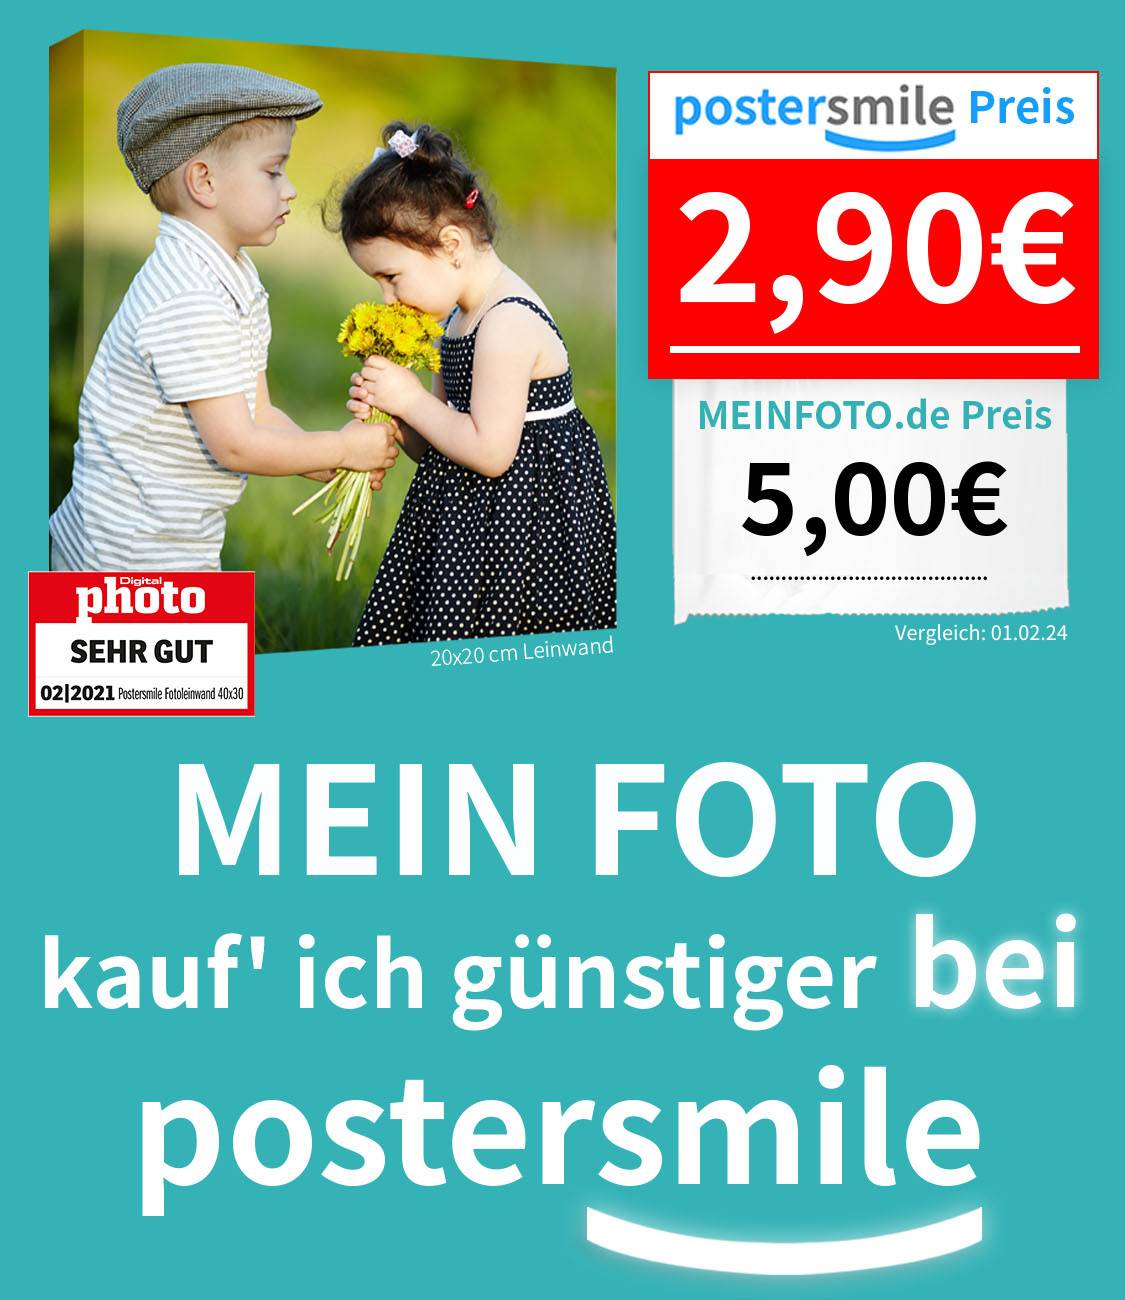 Fotoleinwand günstig - Foto auf Leinwand Preisvergleich postersmile.de vs. meinfoto.de